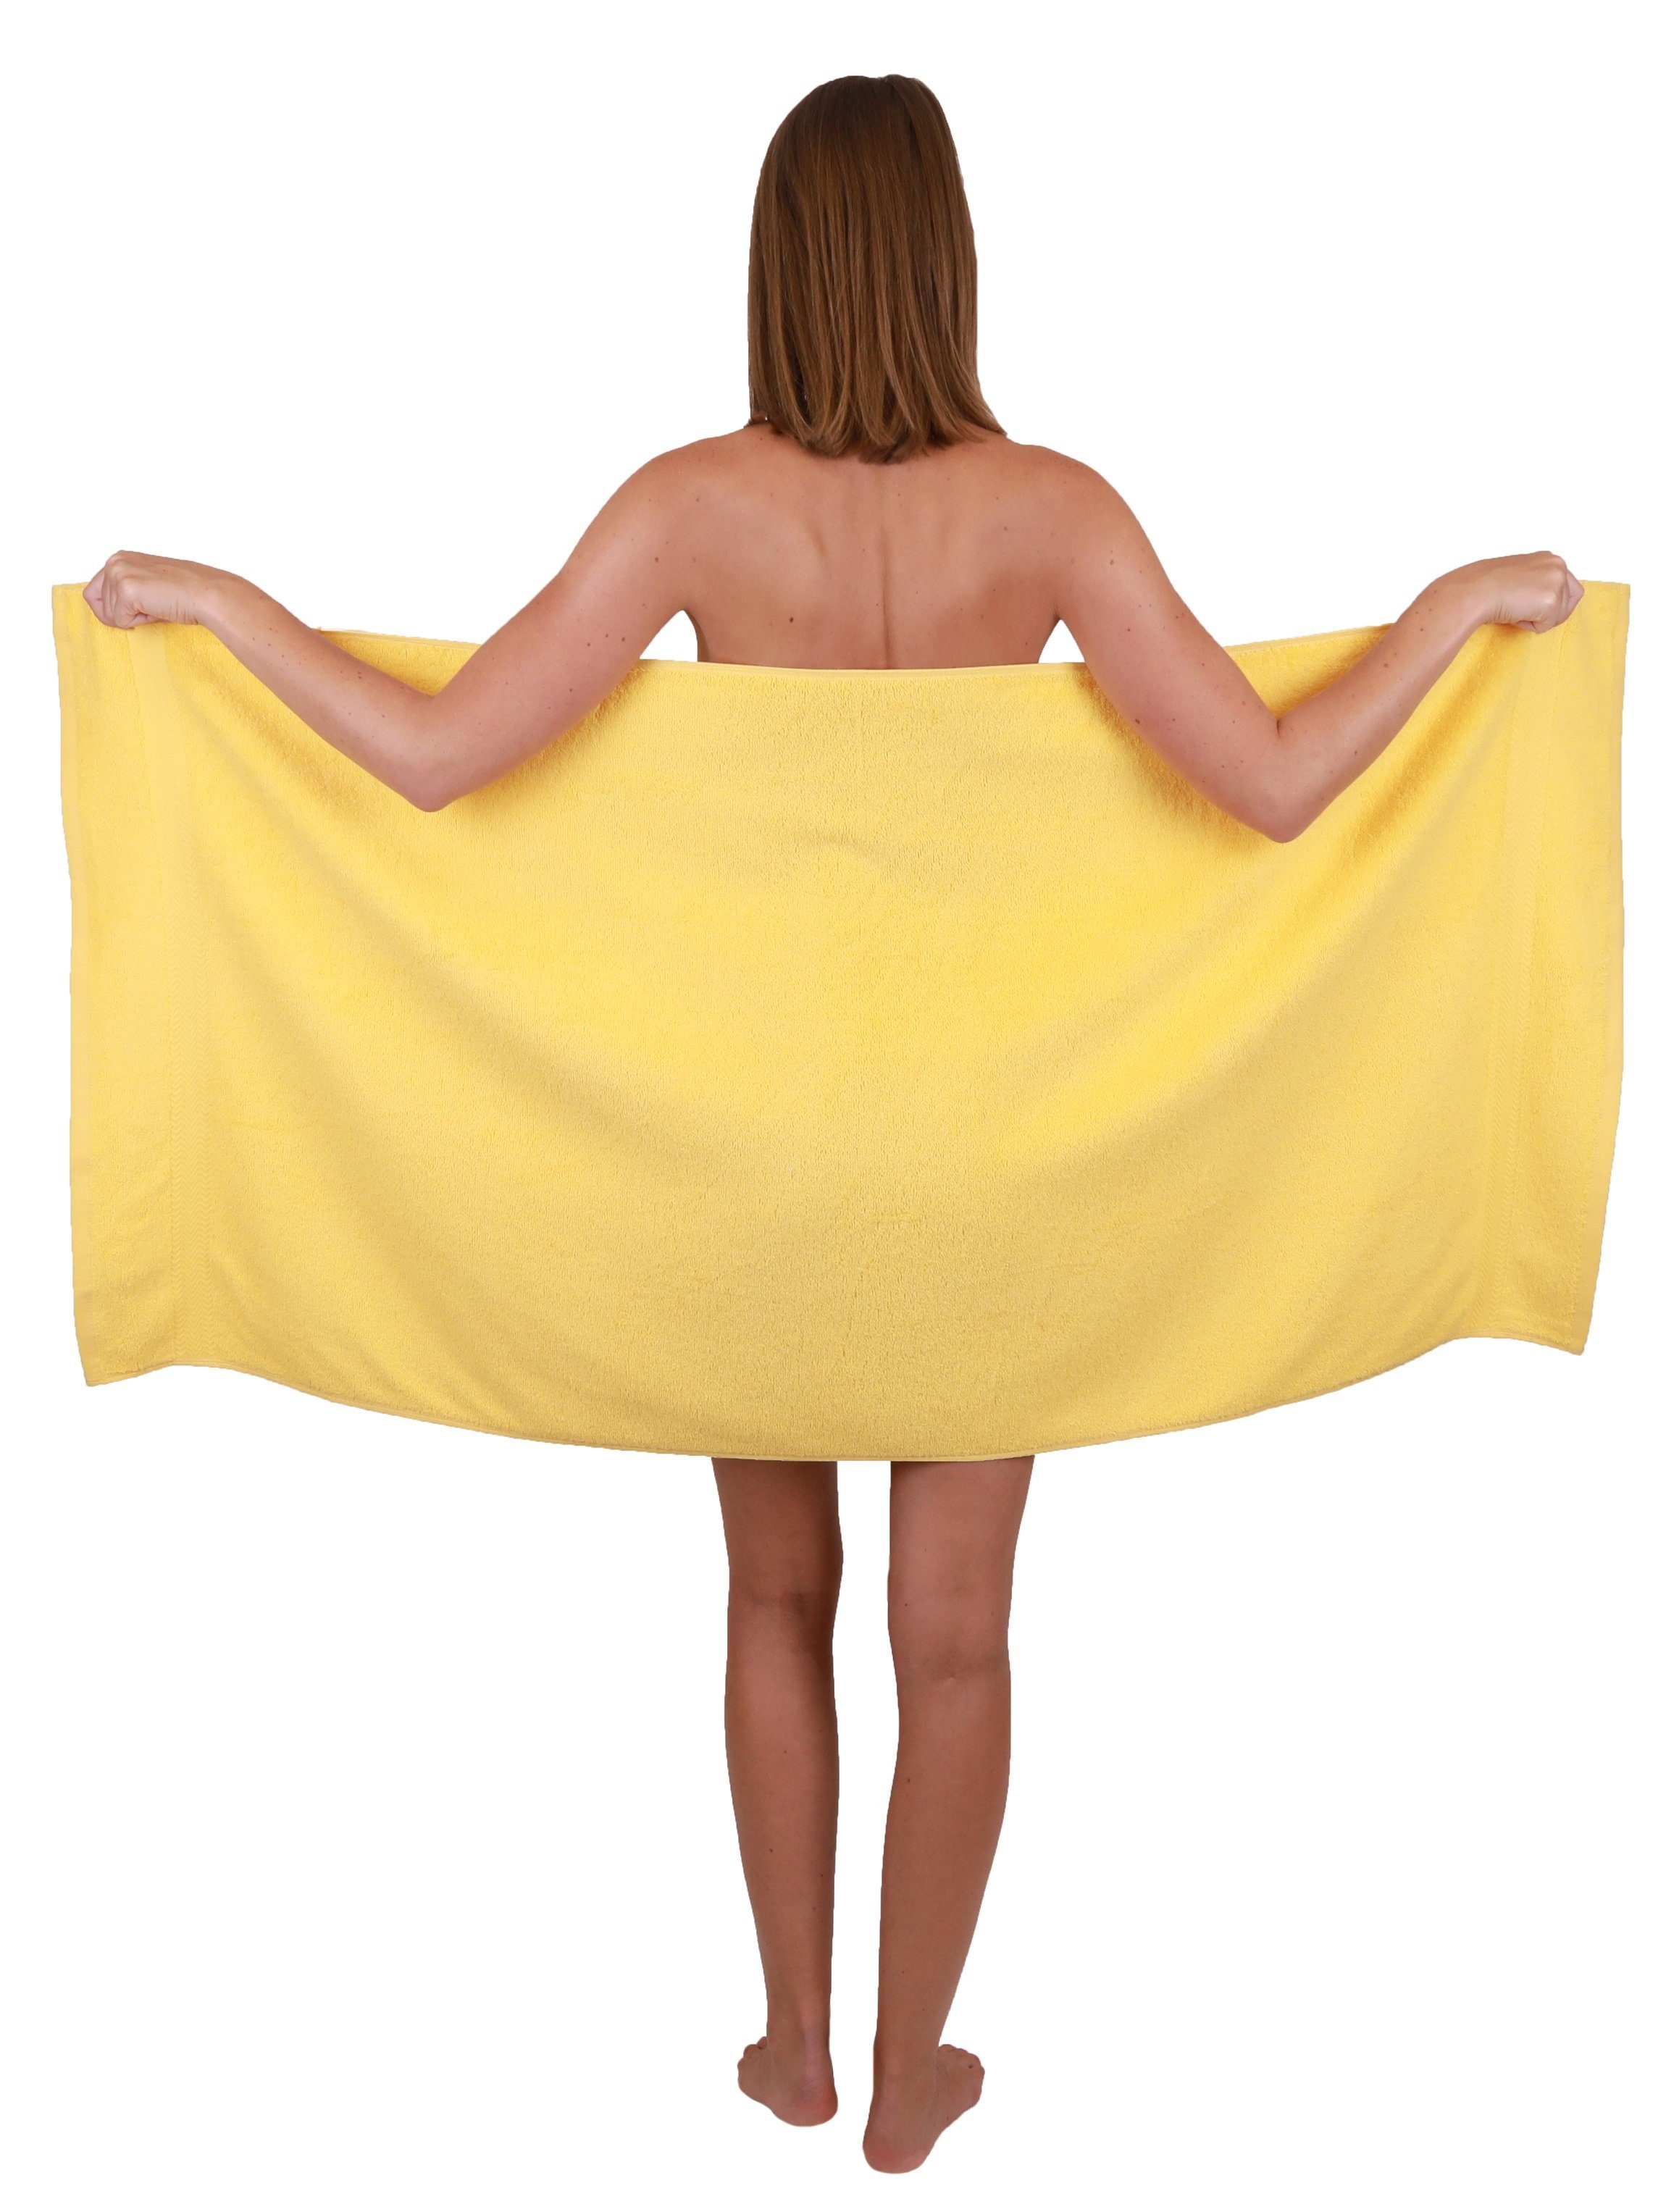 Betz Handtuch Set 10-TLG. Gelb Handtuch-Set Premium & 100% Altrosa, Baumwolle, (10-tlg) Farbe